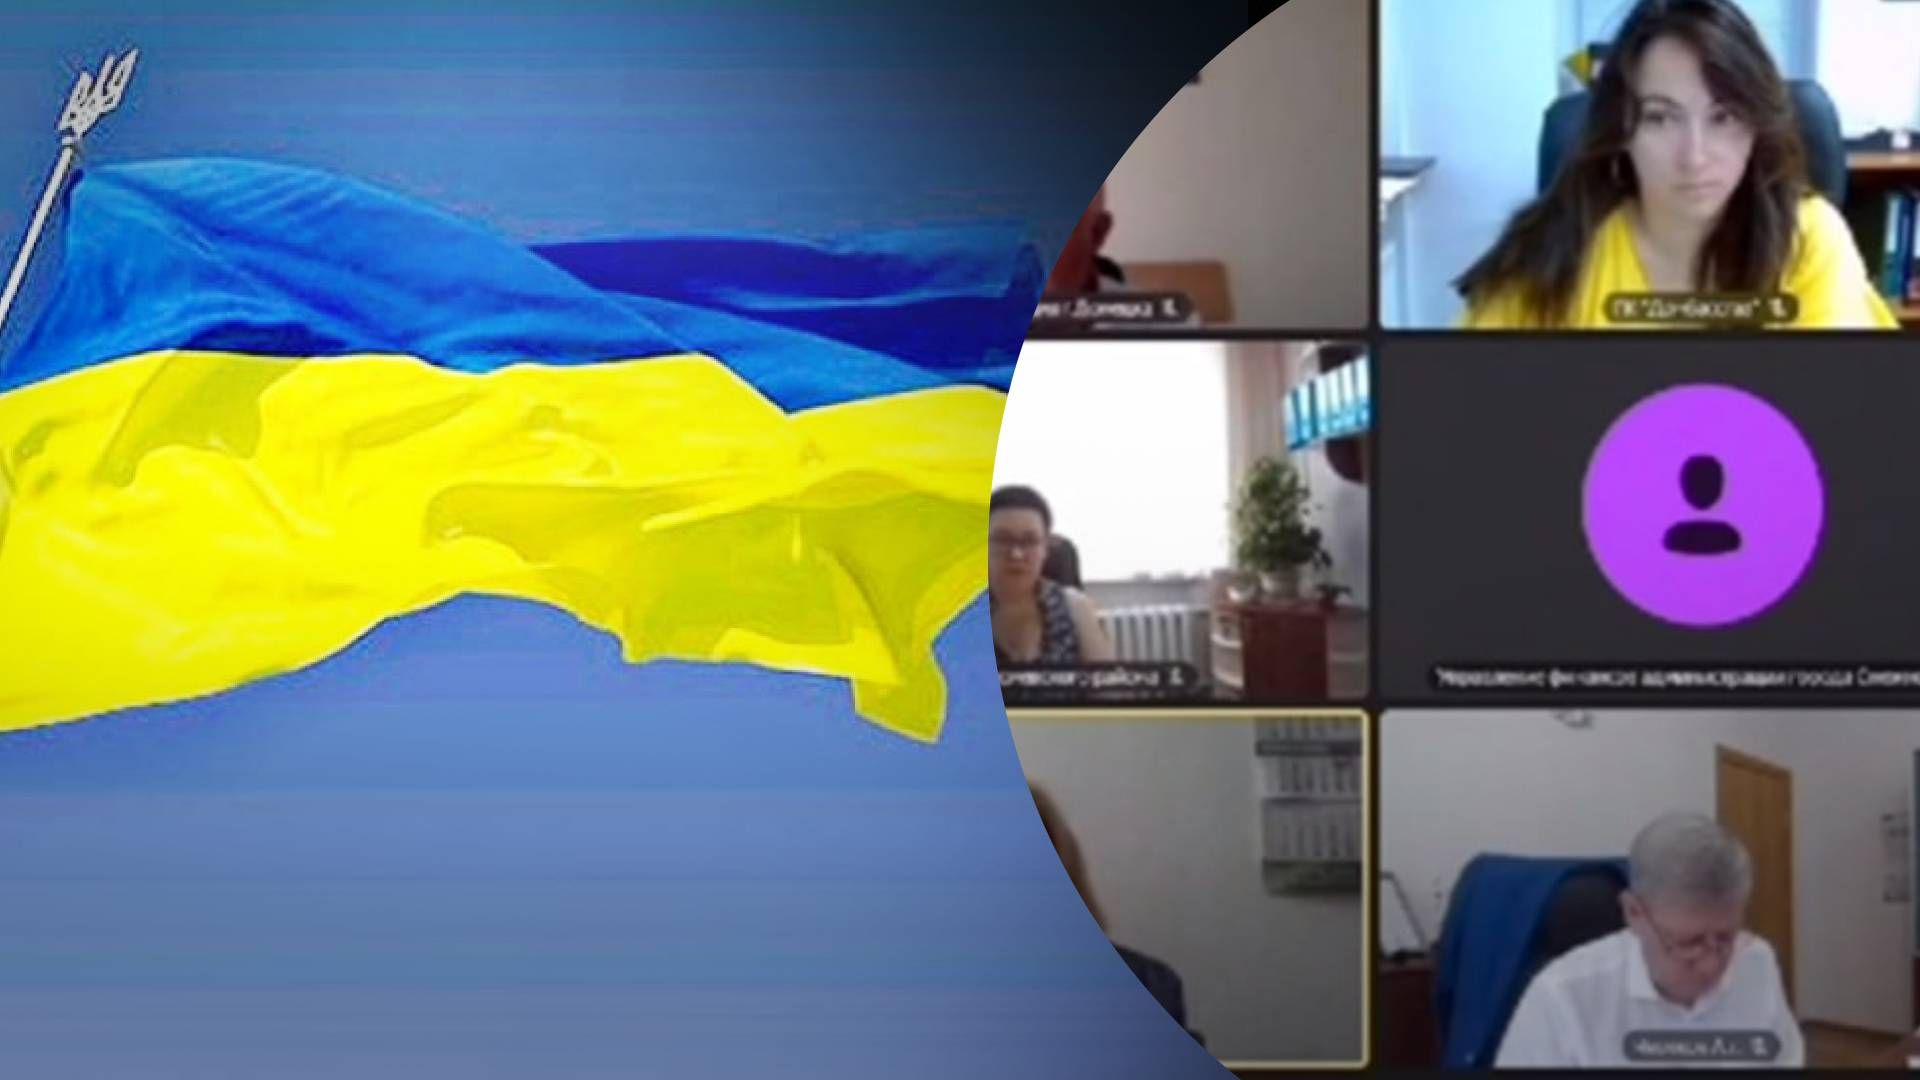  Оккупационные власти "ДНР" во время заседания включили гимн Украины